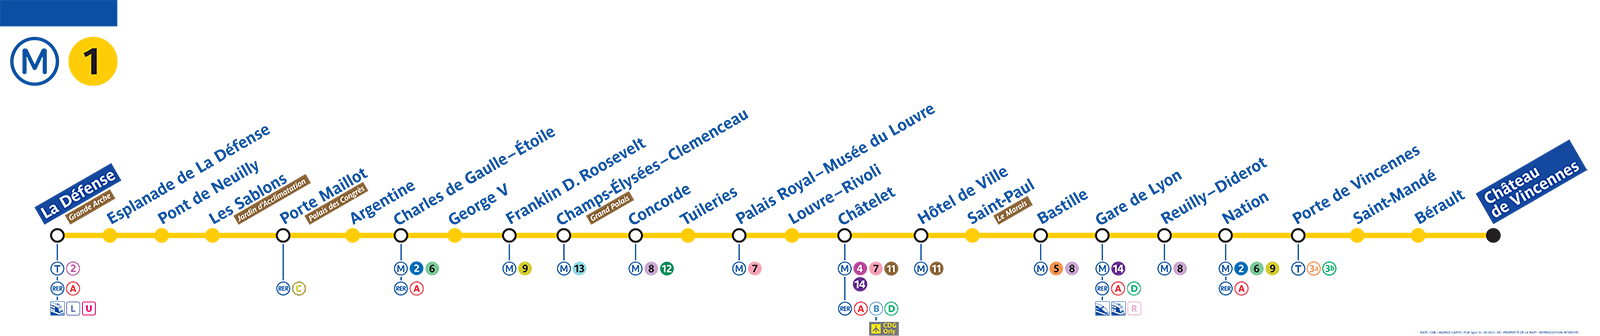 Timetables metro